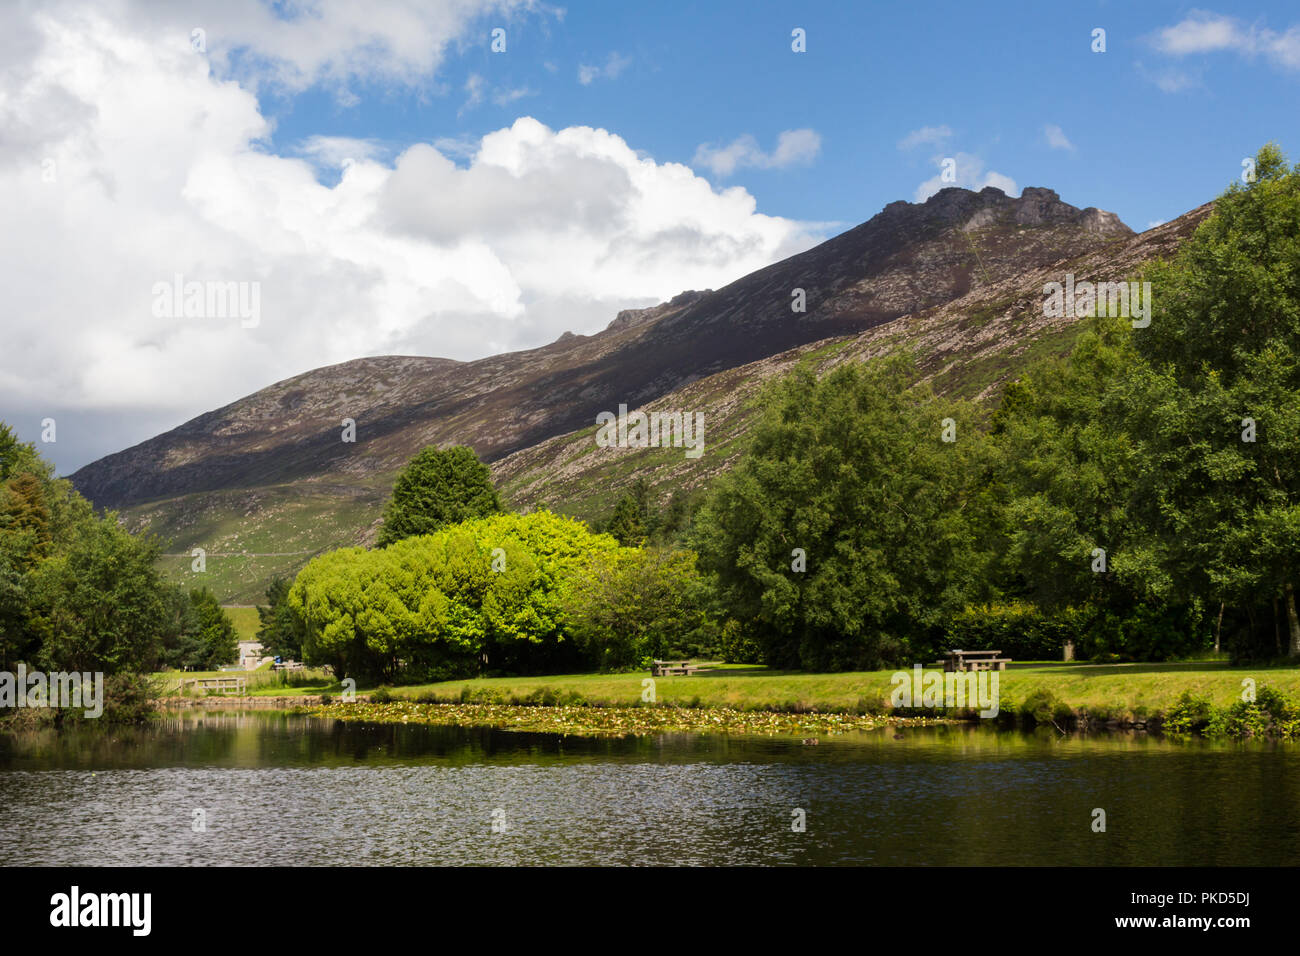 Slieve Binnian montagna, una delle Mourne Mountains, visto dalla Valle silenziosa vicino Kilkeel, County Down, N.Irlanda. Foto Stock